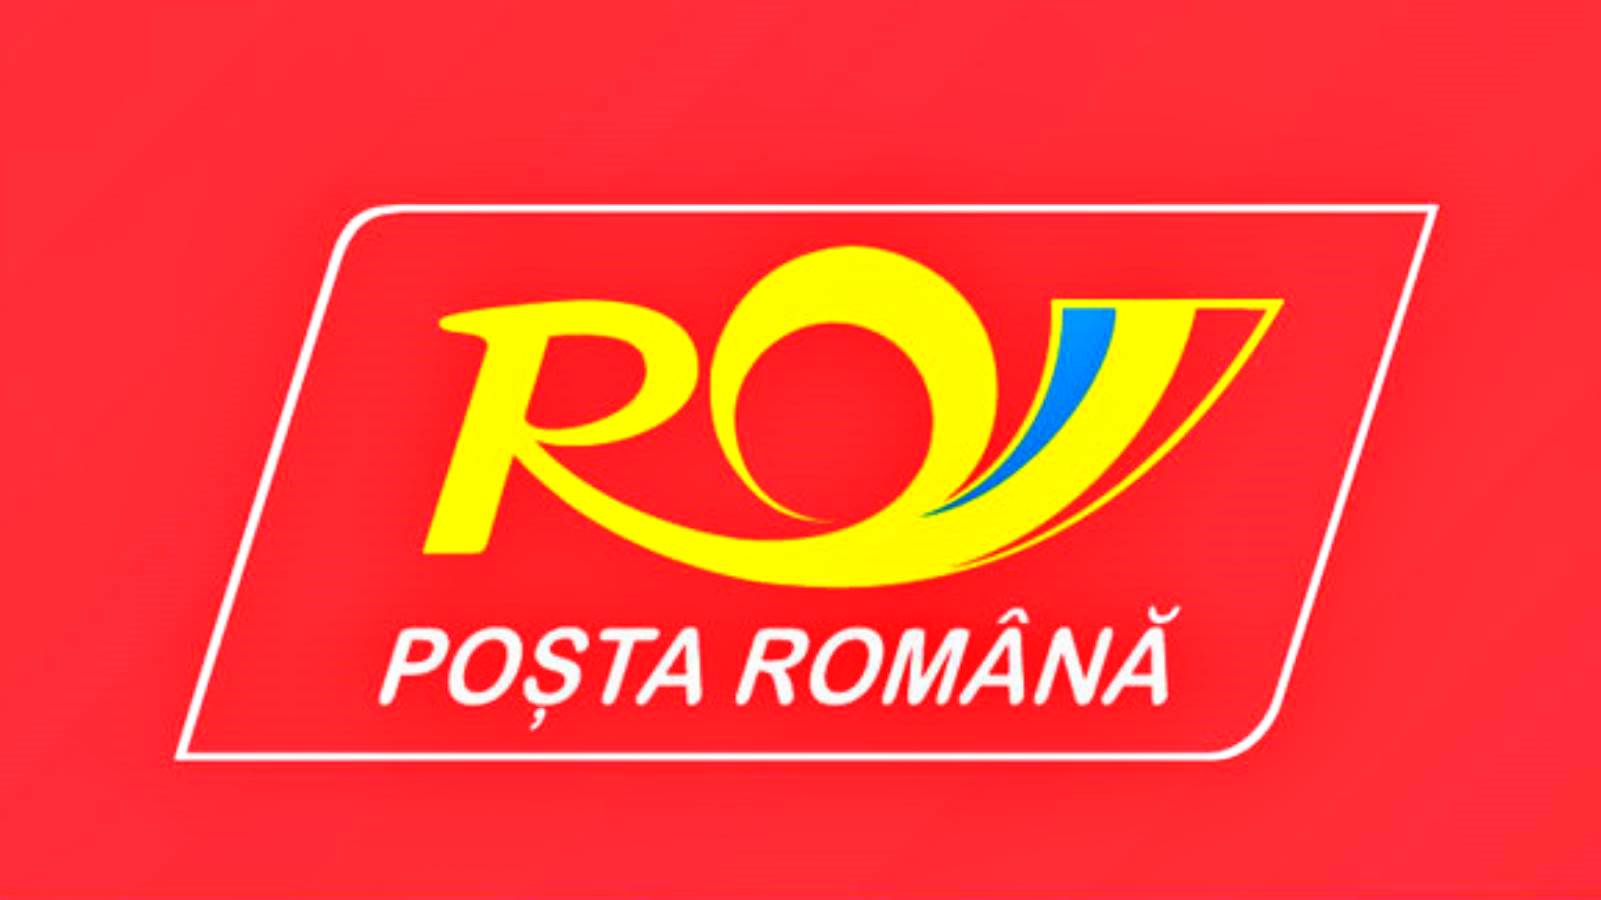 Den rumänska postens beslut tillkännagavs för MILJONER rumäner